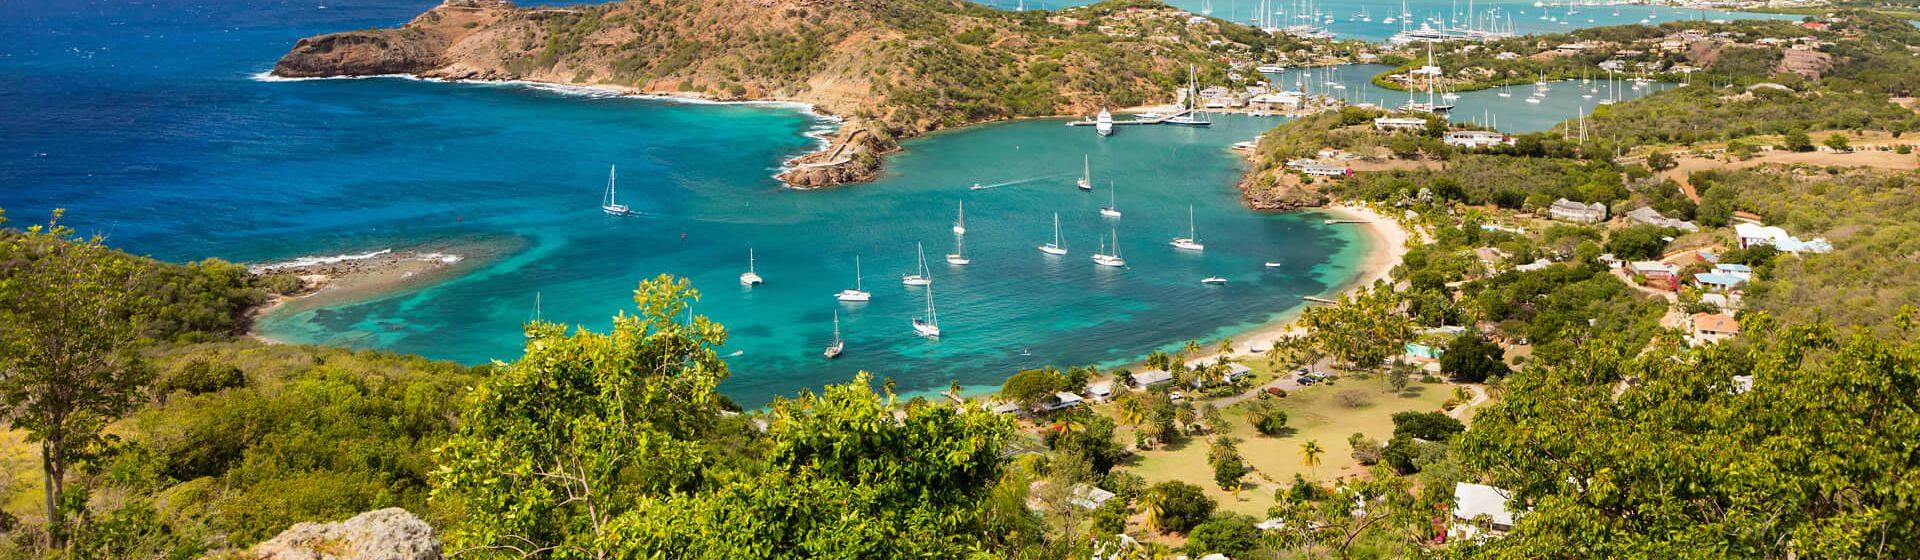 Holidays to Antigua and Barbuda Image